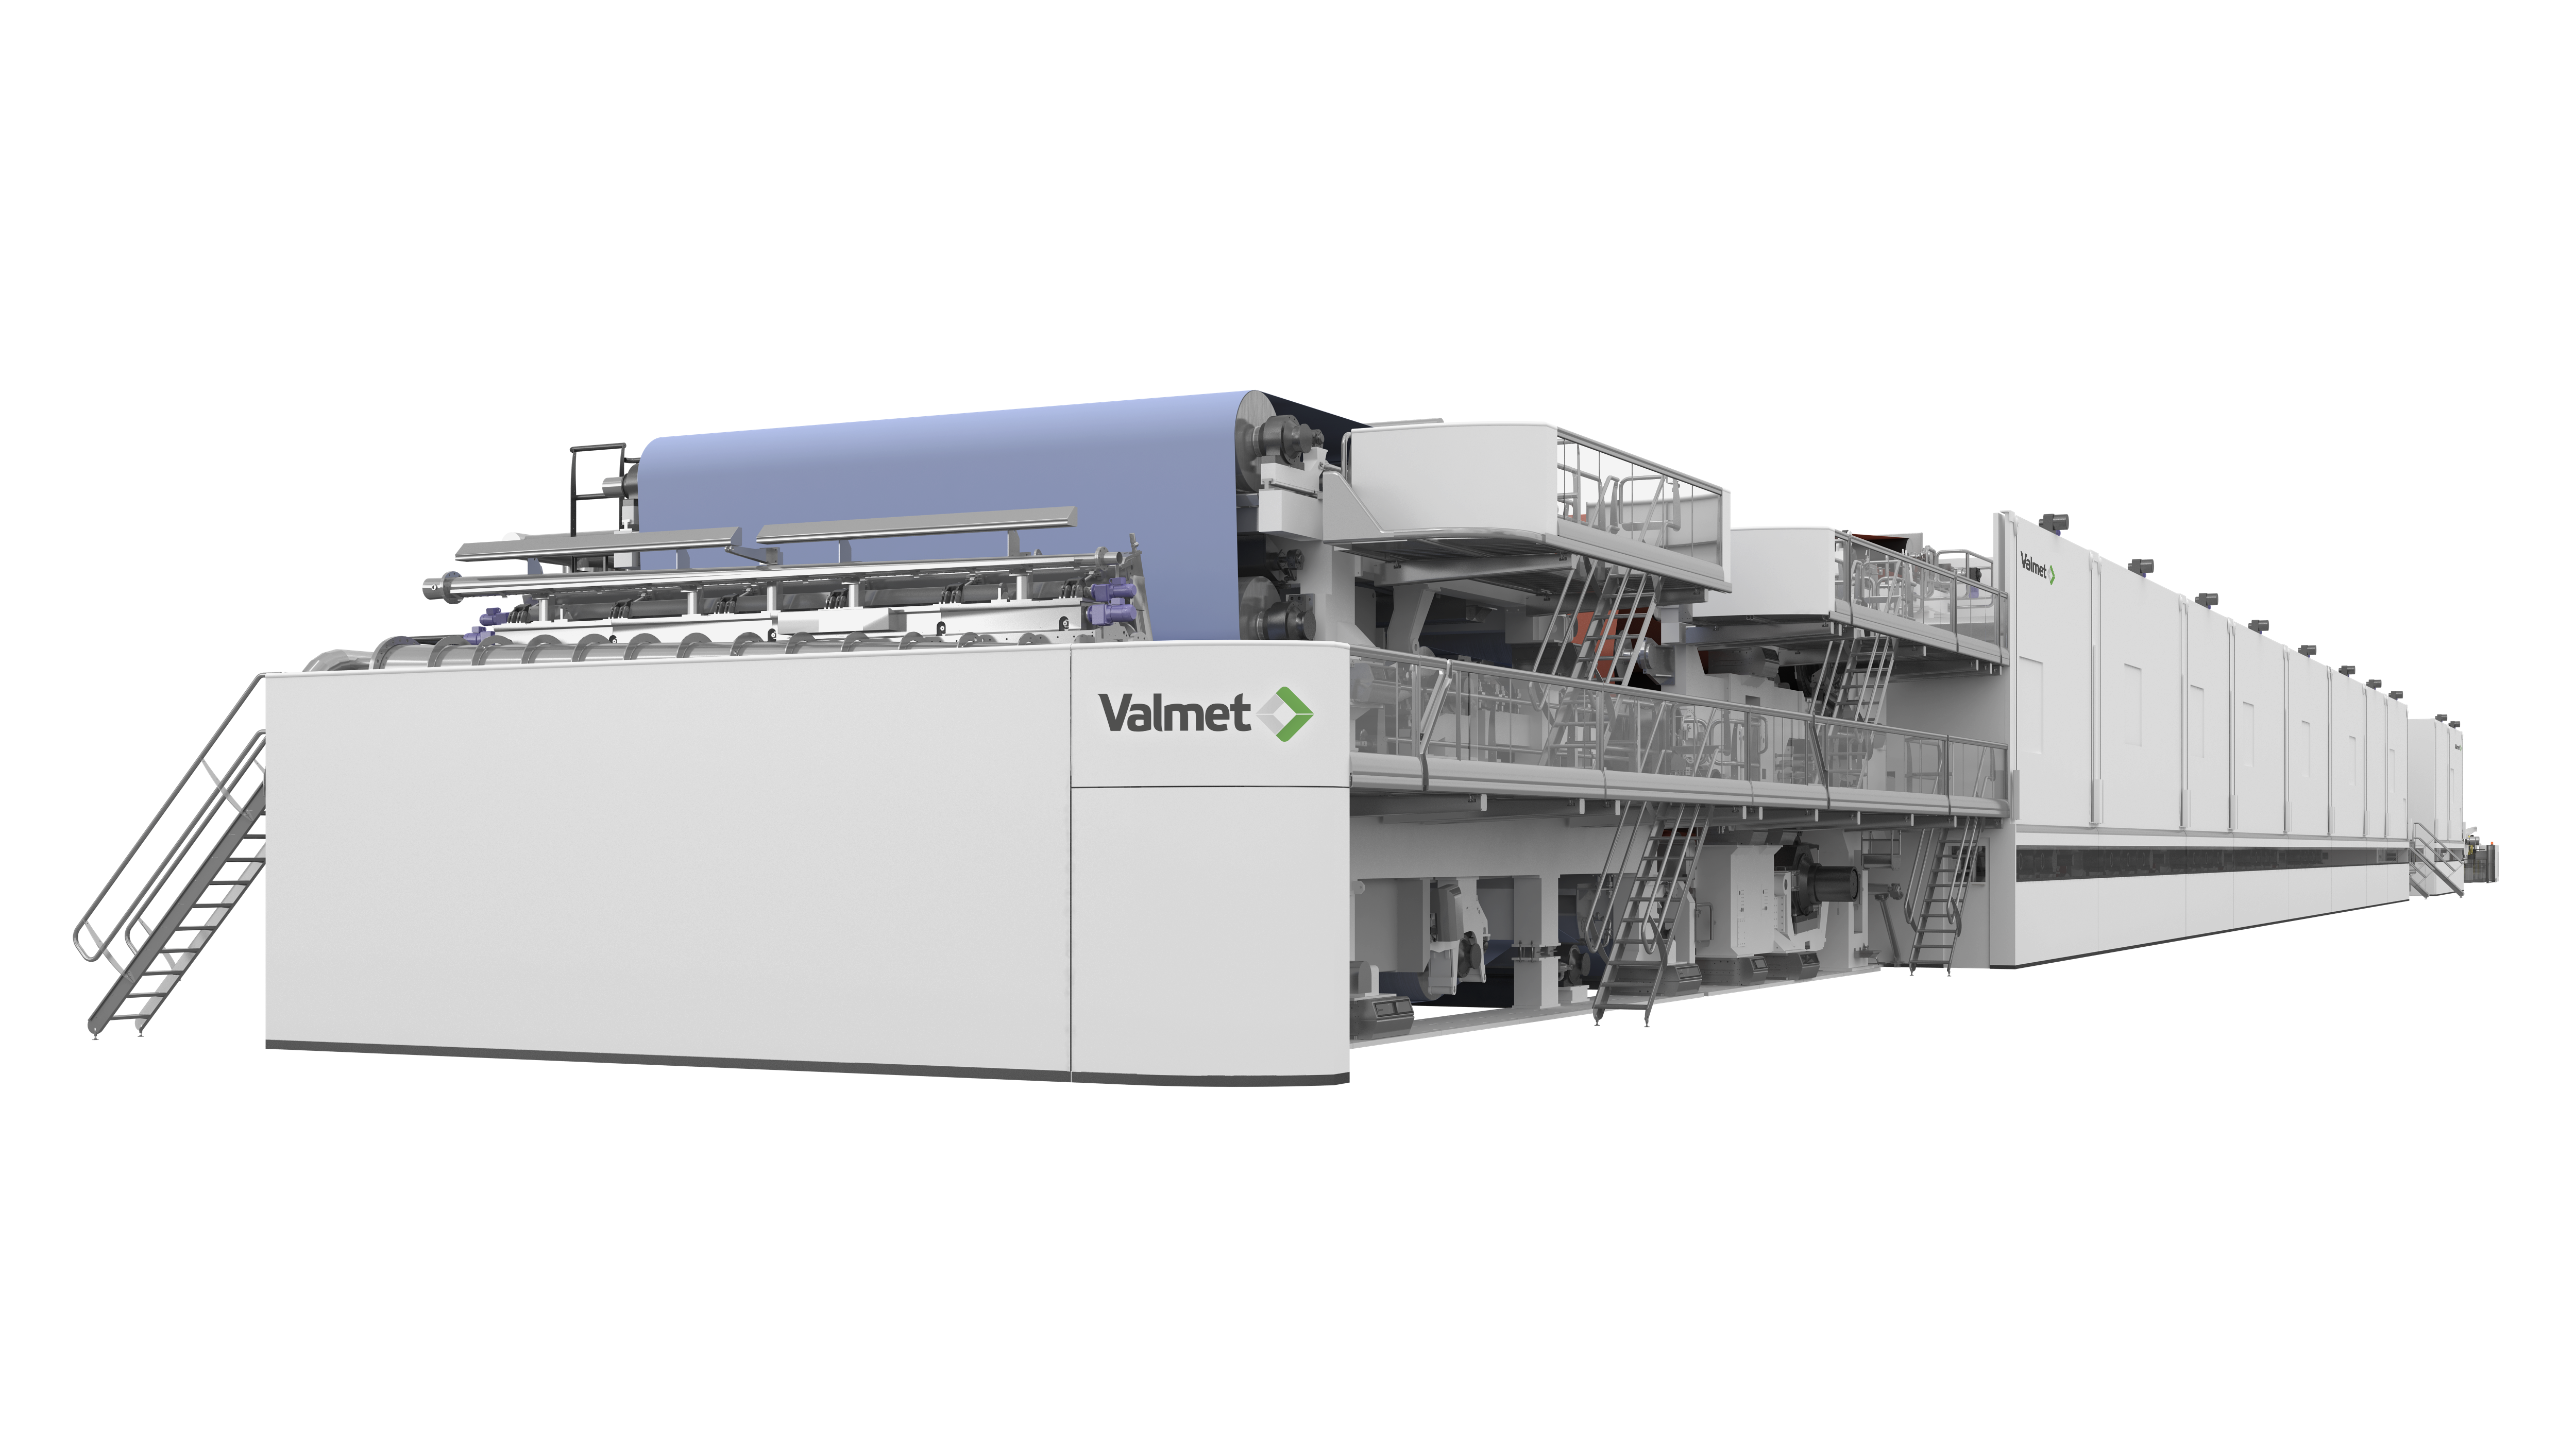 Valmet avança no digital com a Dassault Systèmes e aperfeiçoa engenharia e vendas de papel e celulose